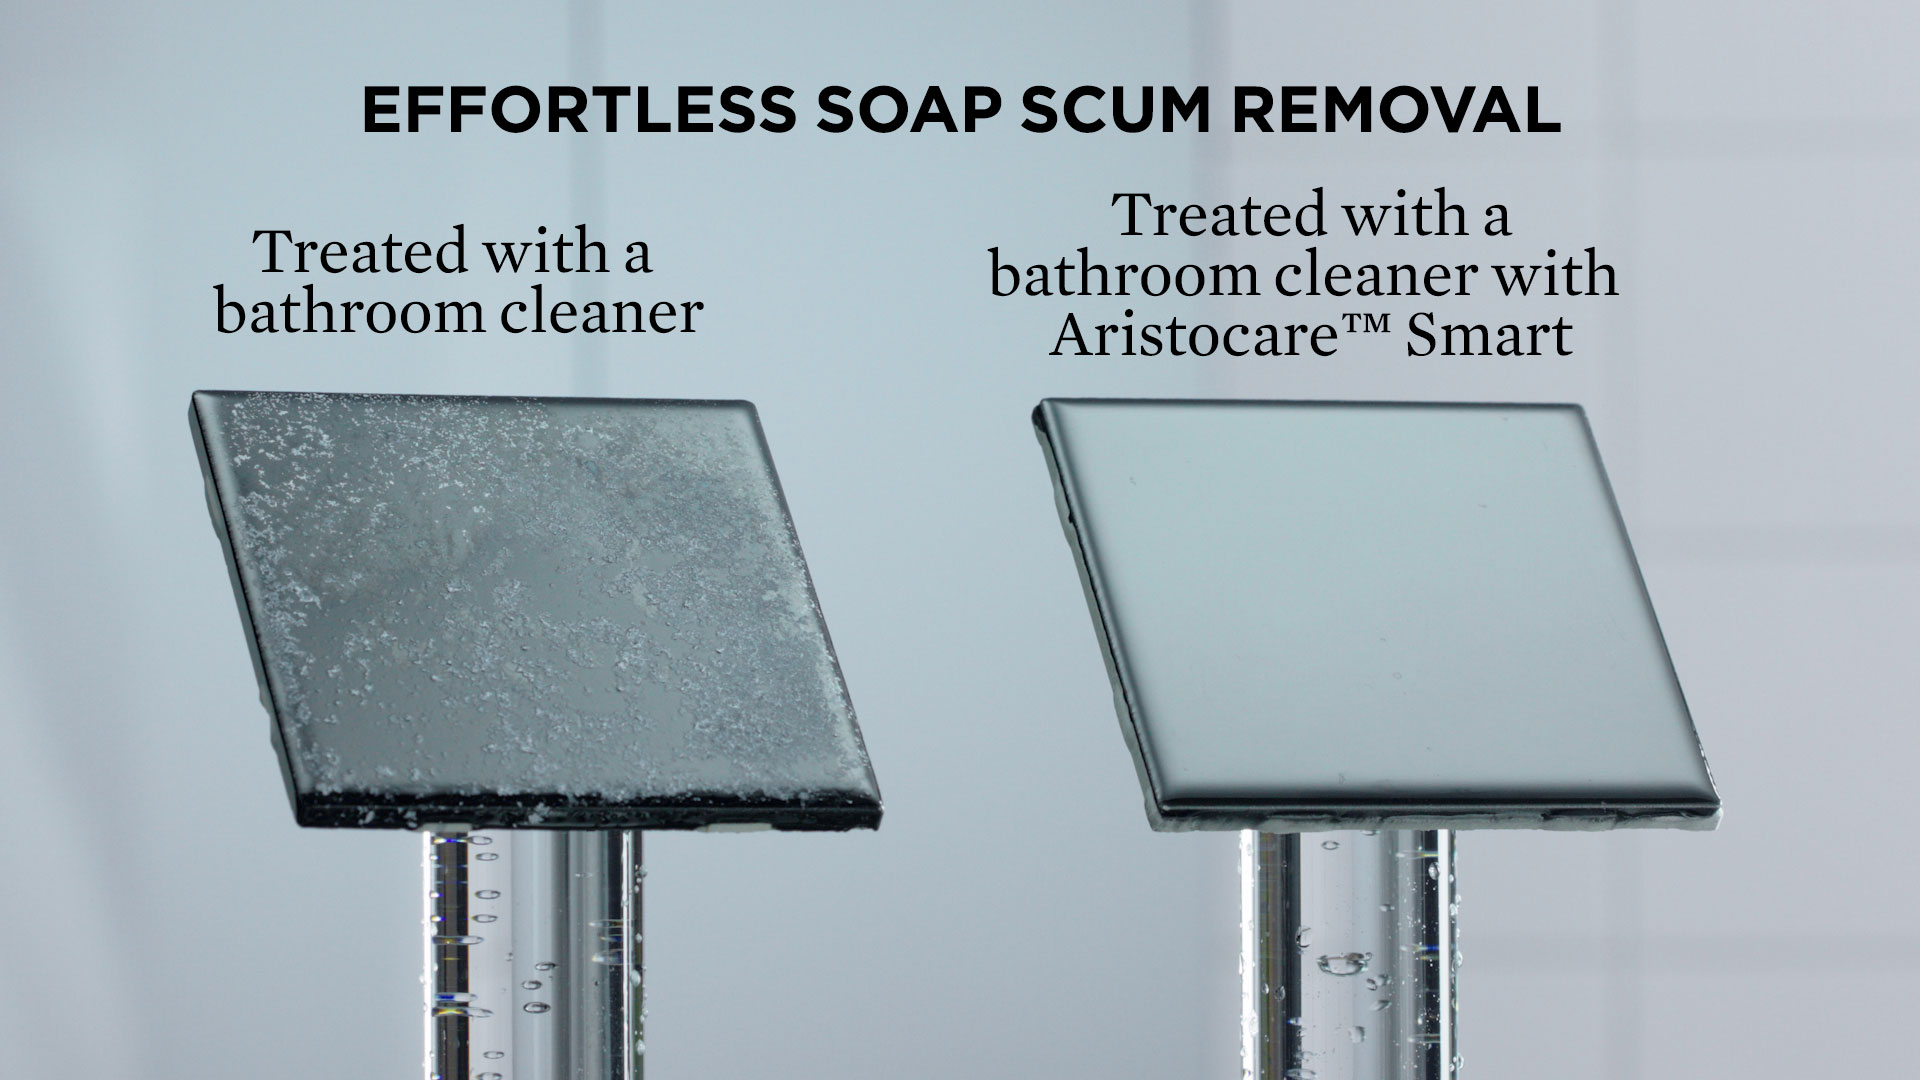 Aristocare Smart makes soap scum removal easy